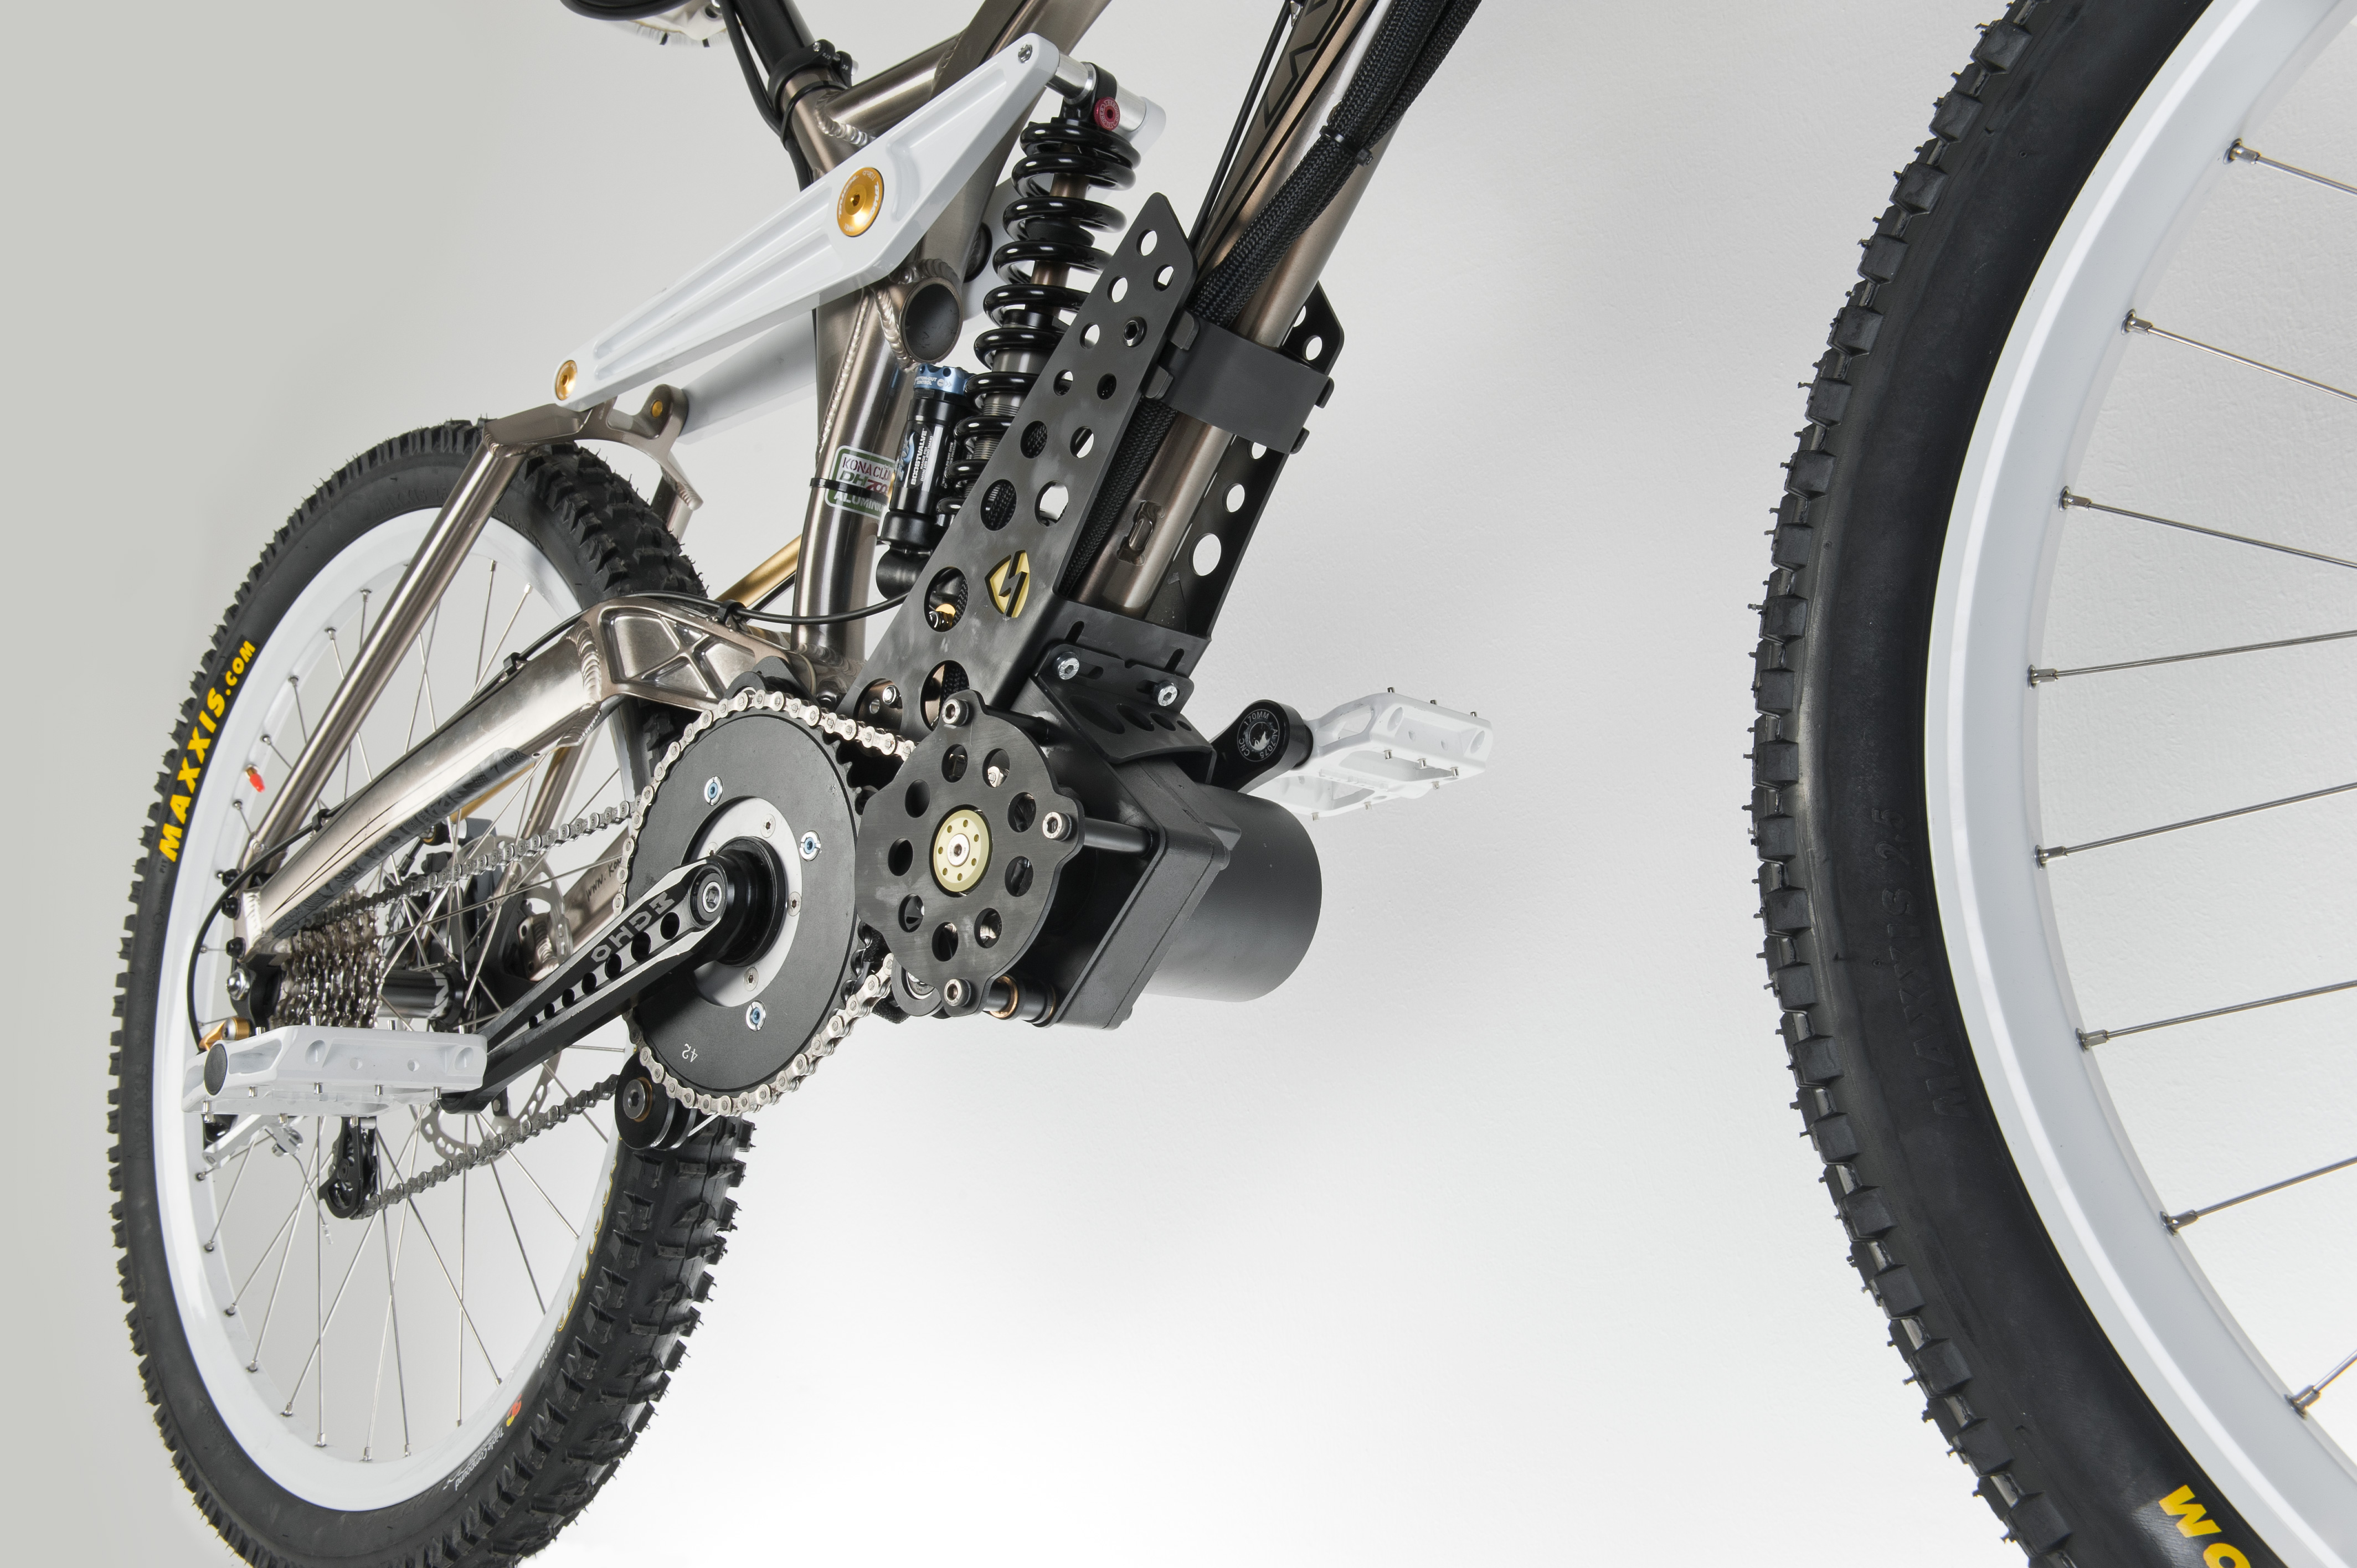 Ego Kit + Propain Tyee - Eine Alternative zu konventionellen E-Bikes a